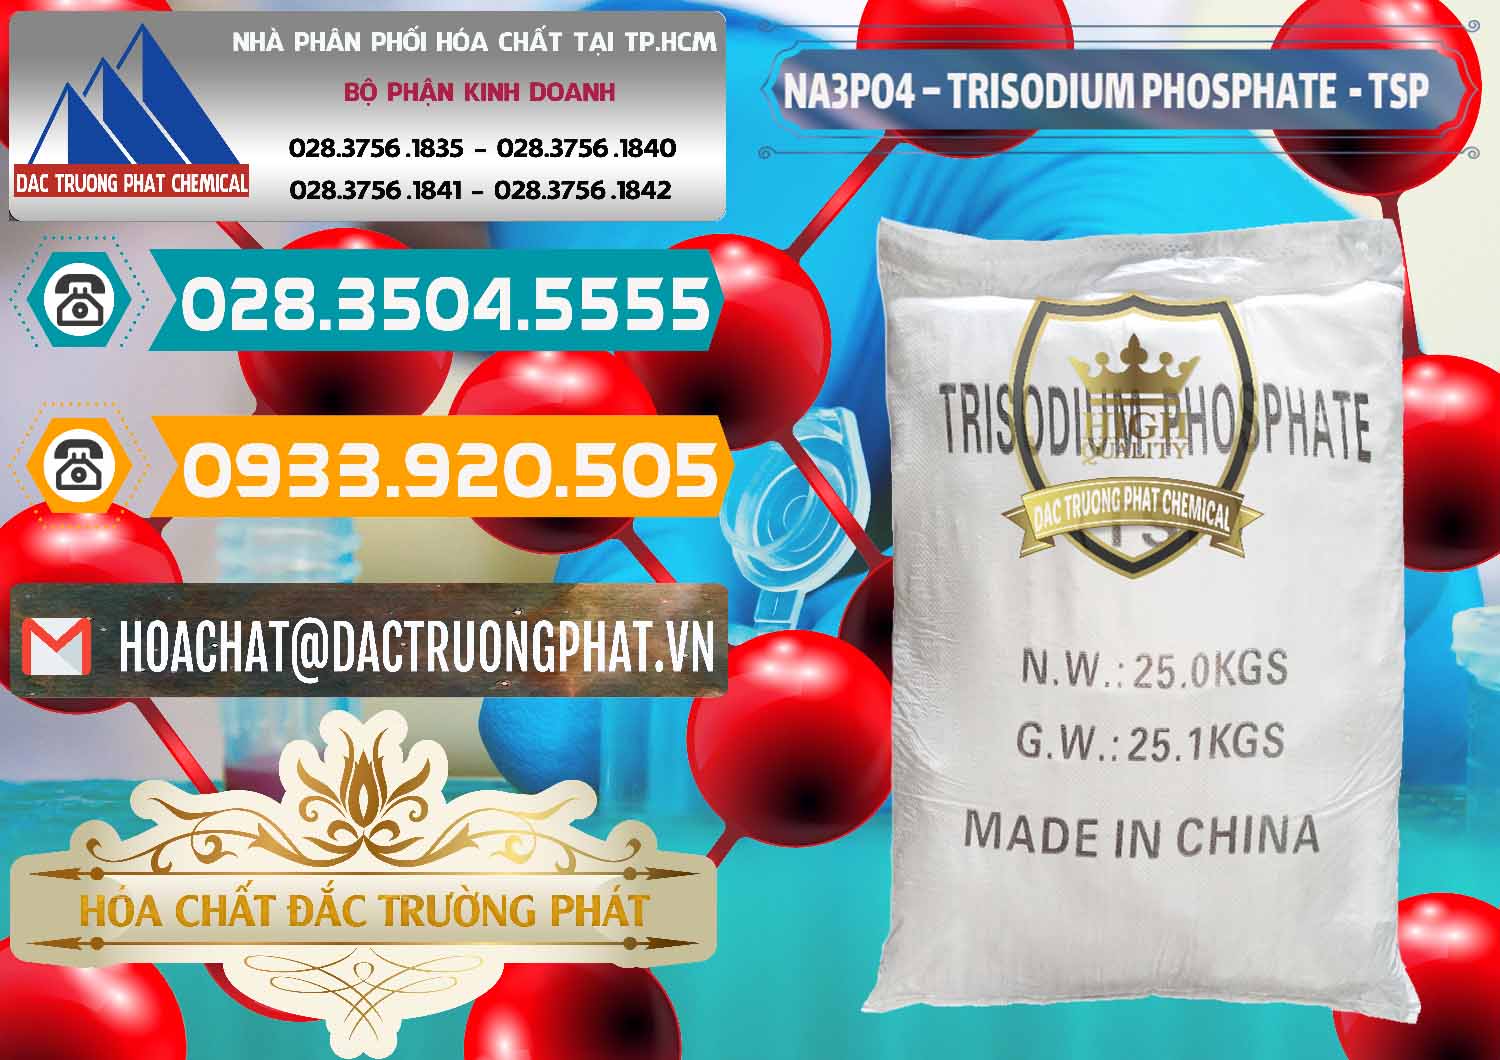 Cty chuyên cung cấp & bán Na3PO4 – Trisodium Phosphate Trung Quốc China TSP - 0103 - Chuyên cung cấp _ phân phối hóa chất tại TP.HCM - congtyhoachat.vn